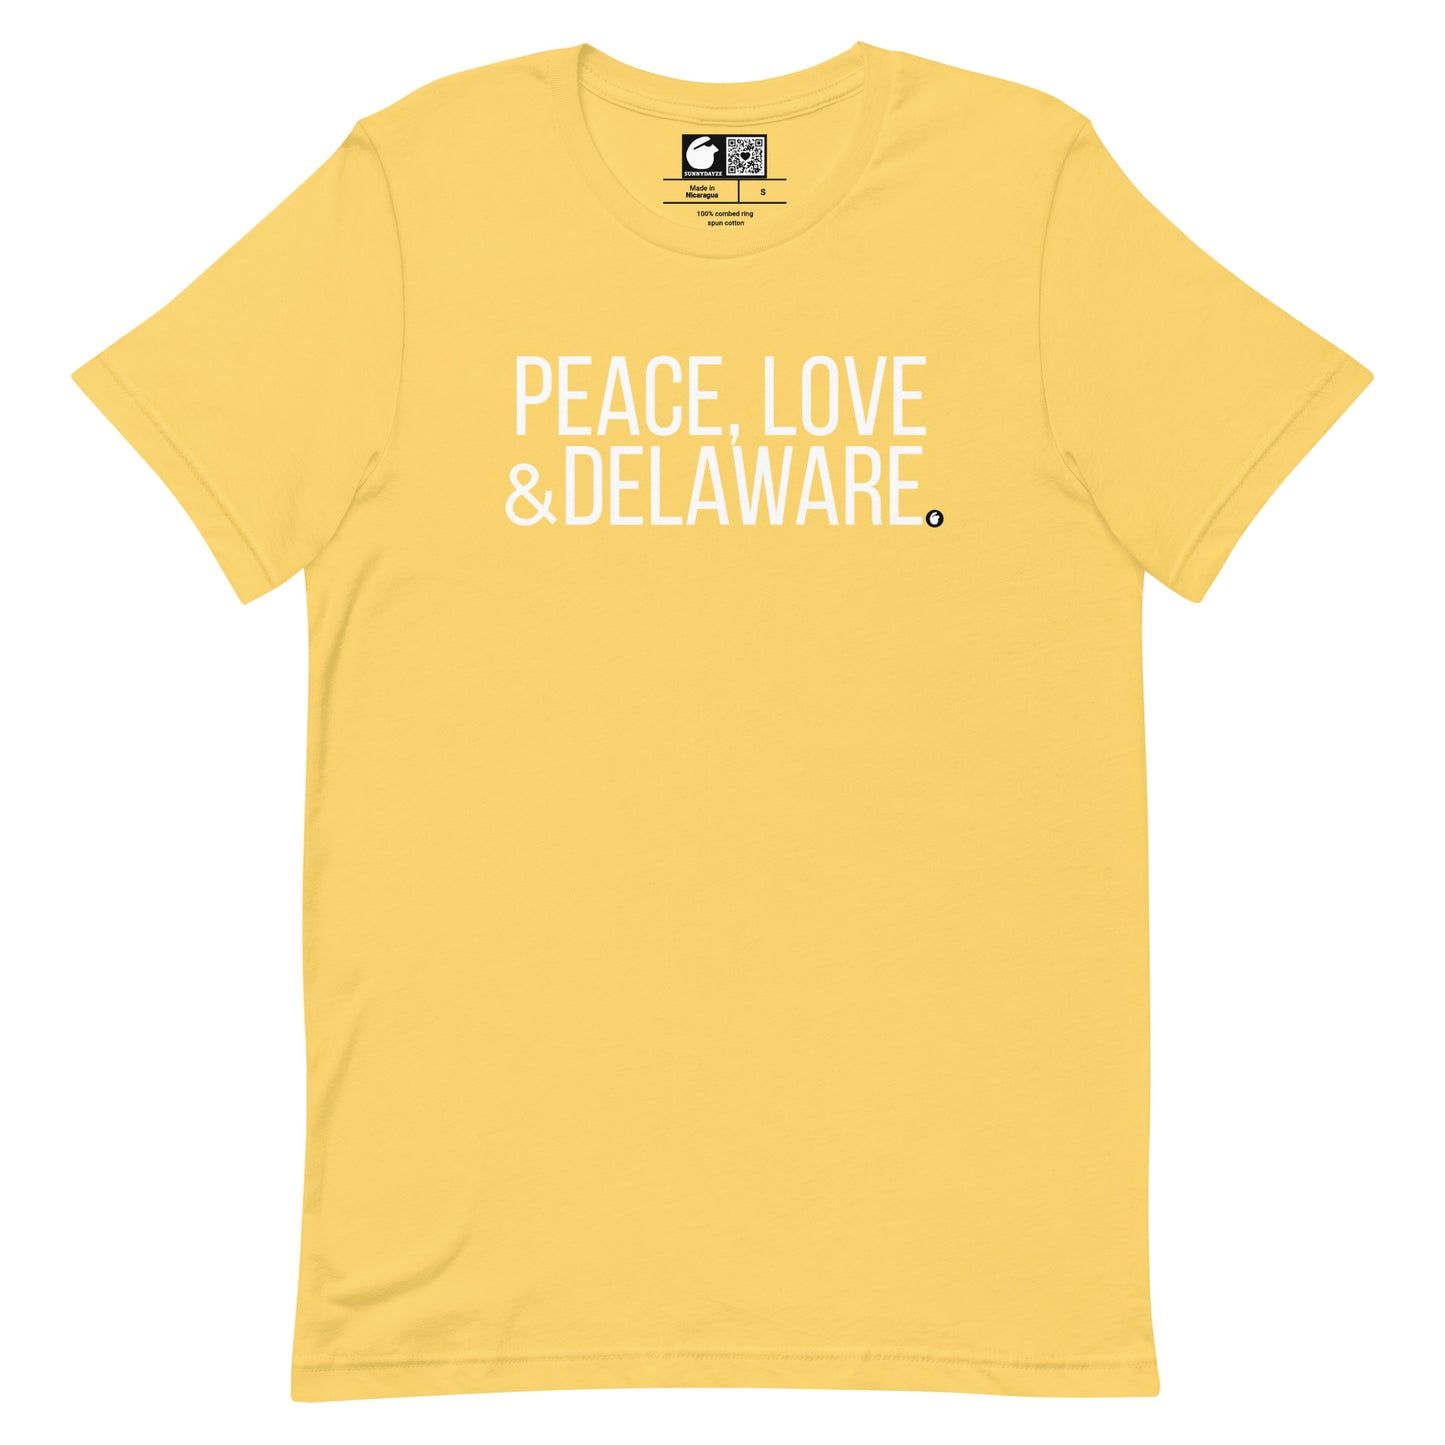 DELAWARE Short-Sleeve Unisex t-shirt